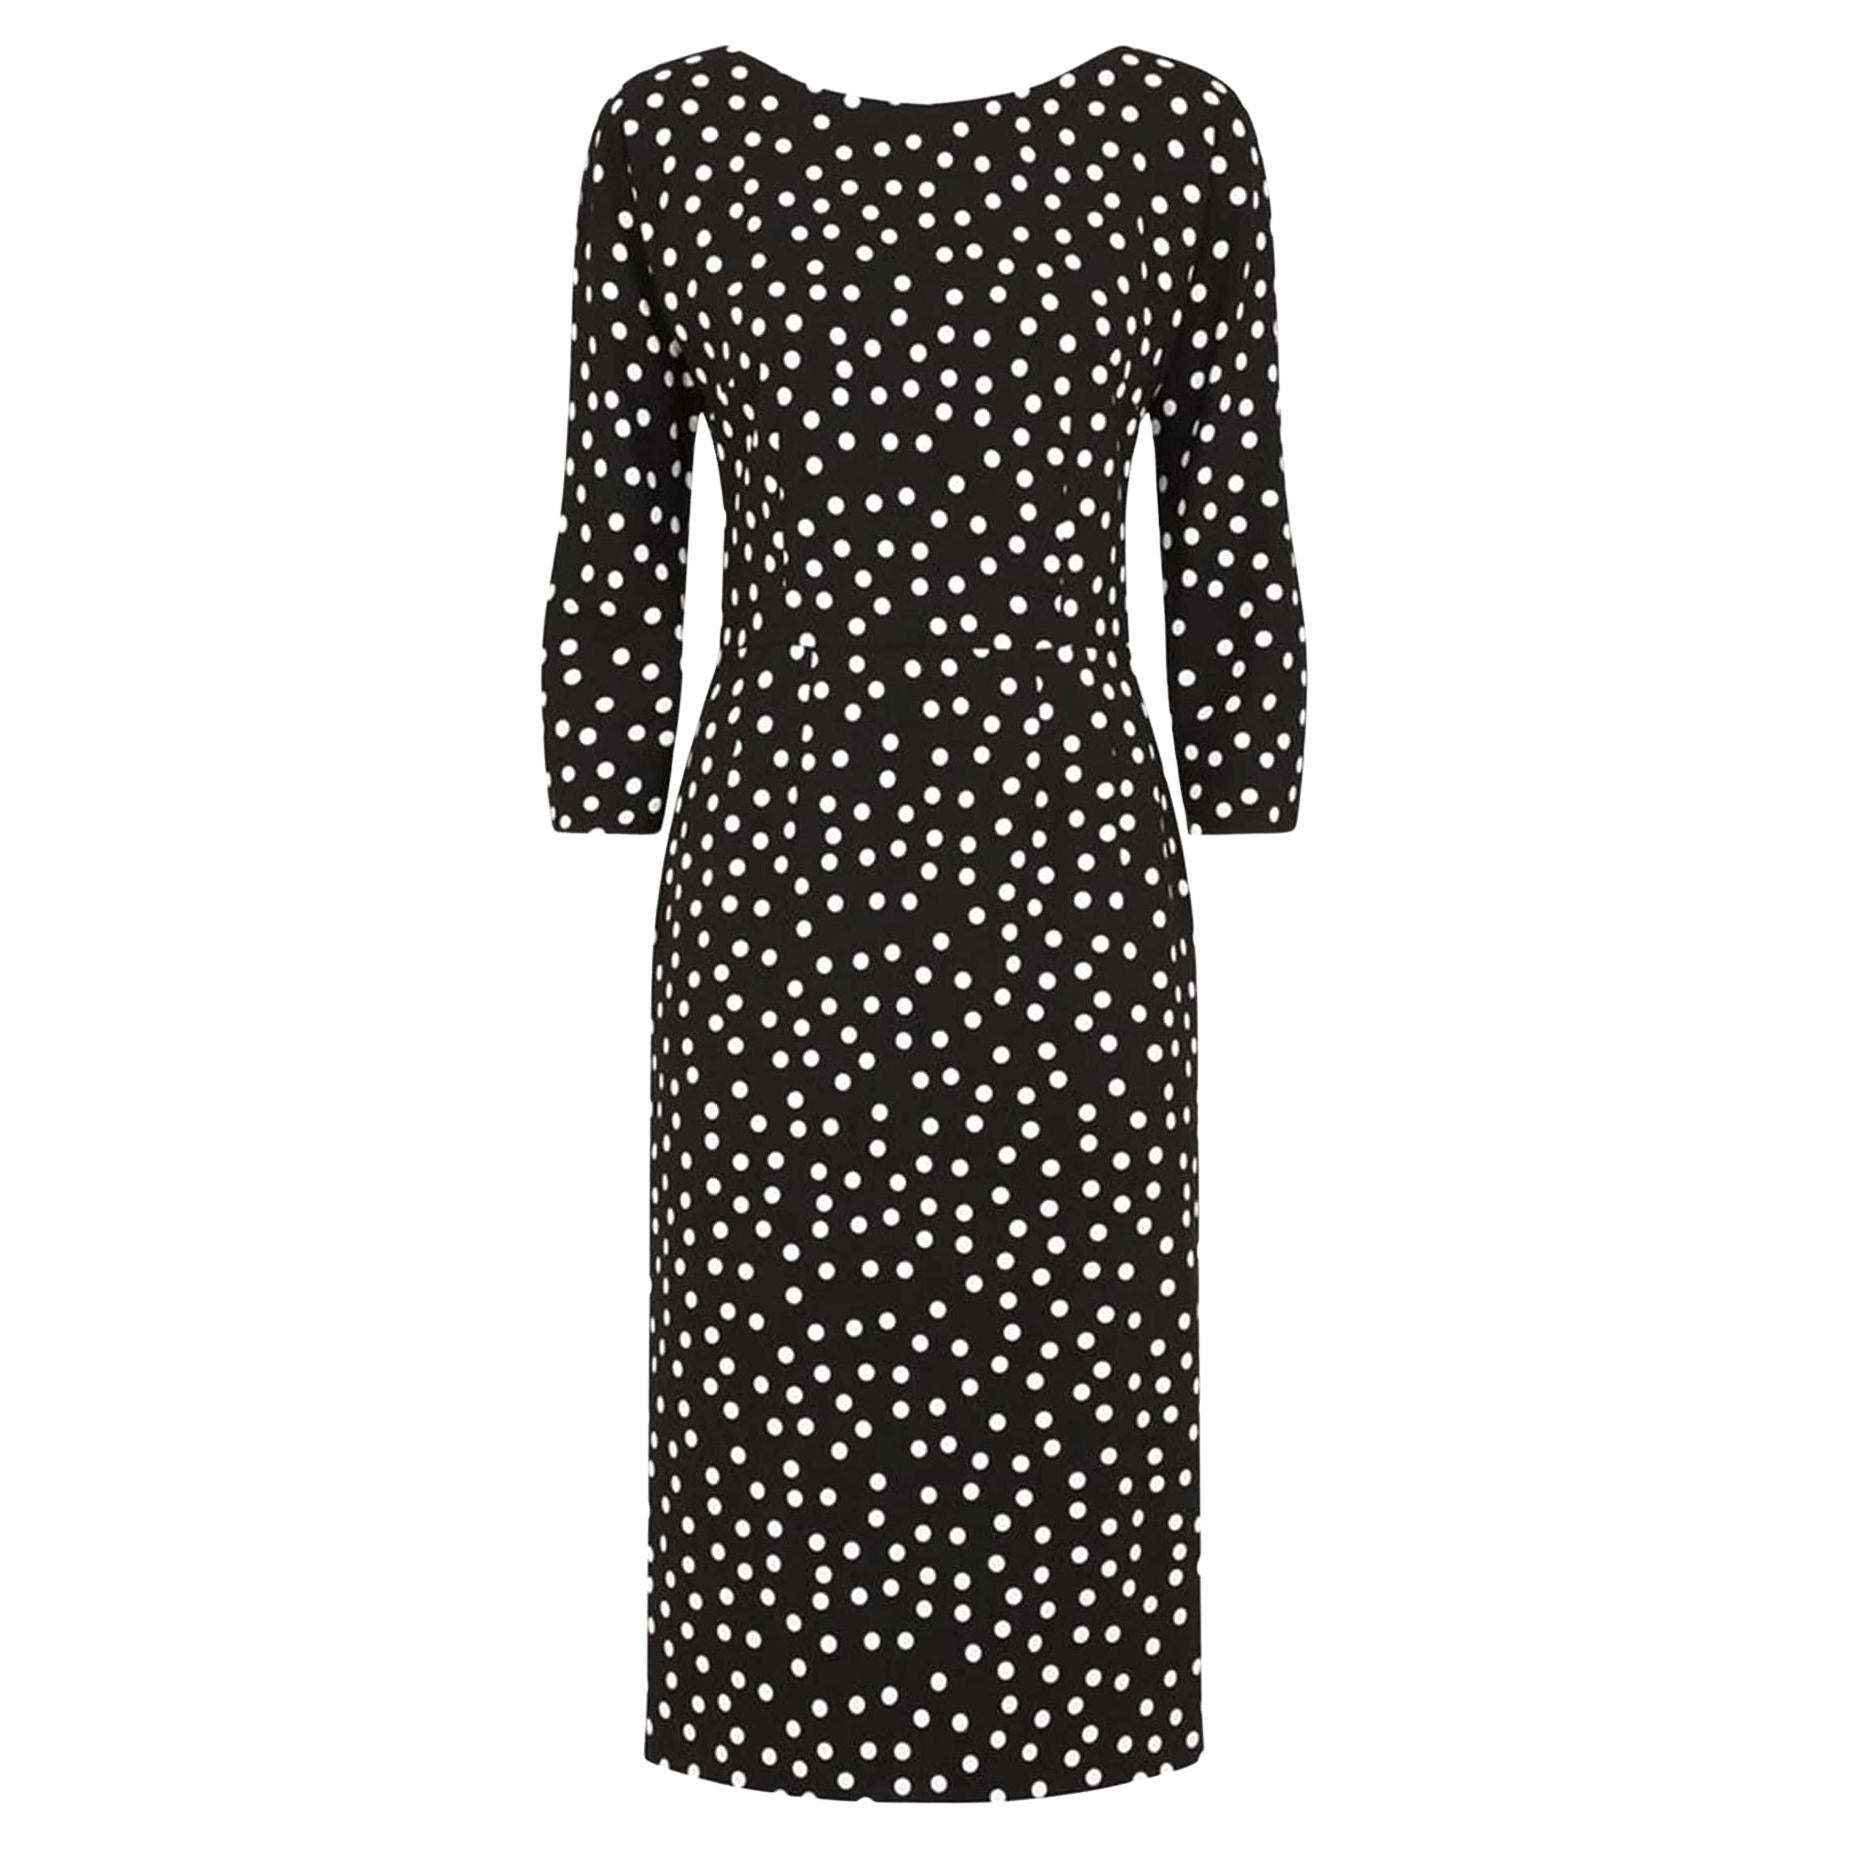 Dolce & Gabbana polka dot print sheath dress For Sale